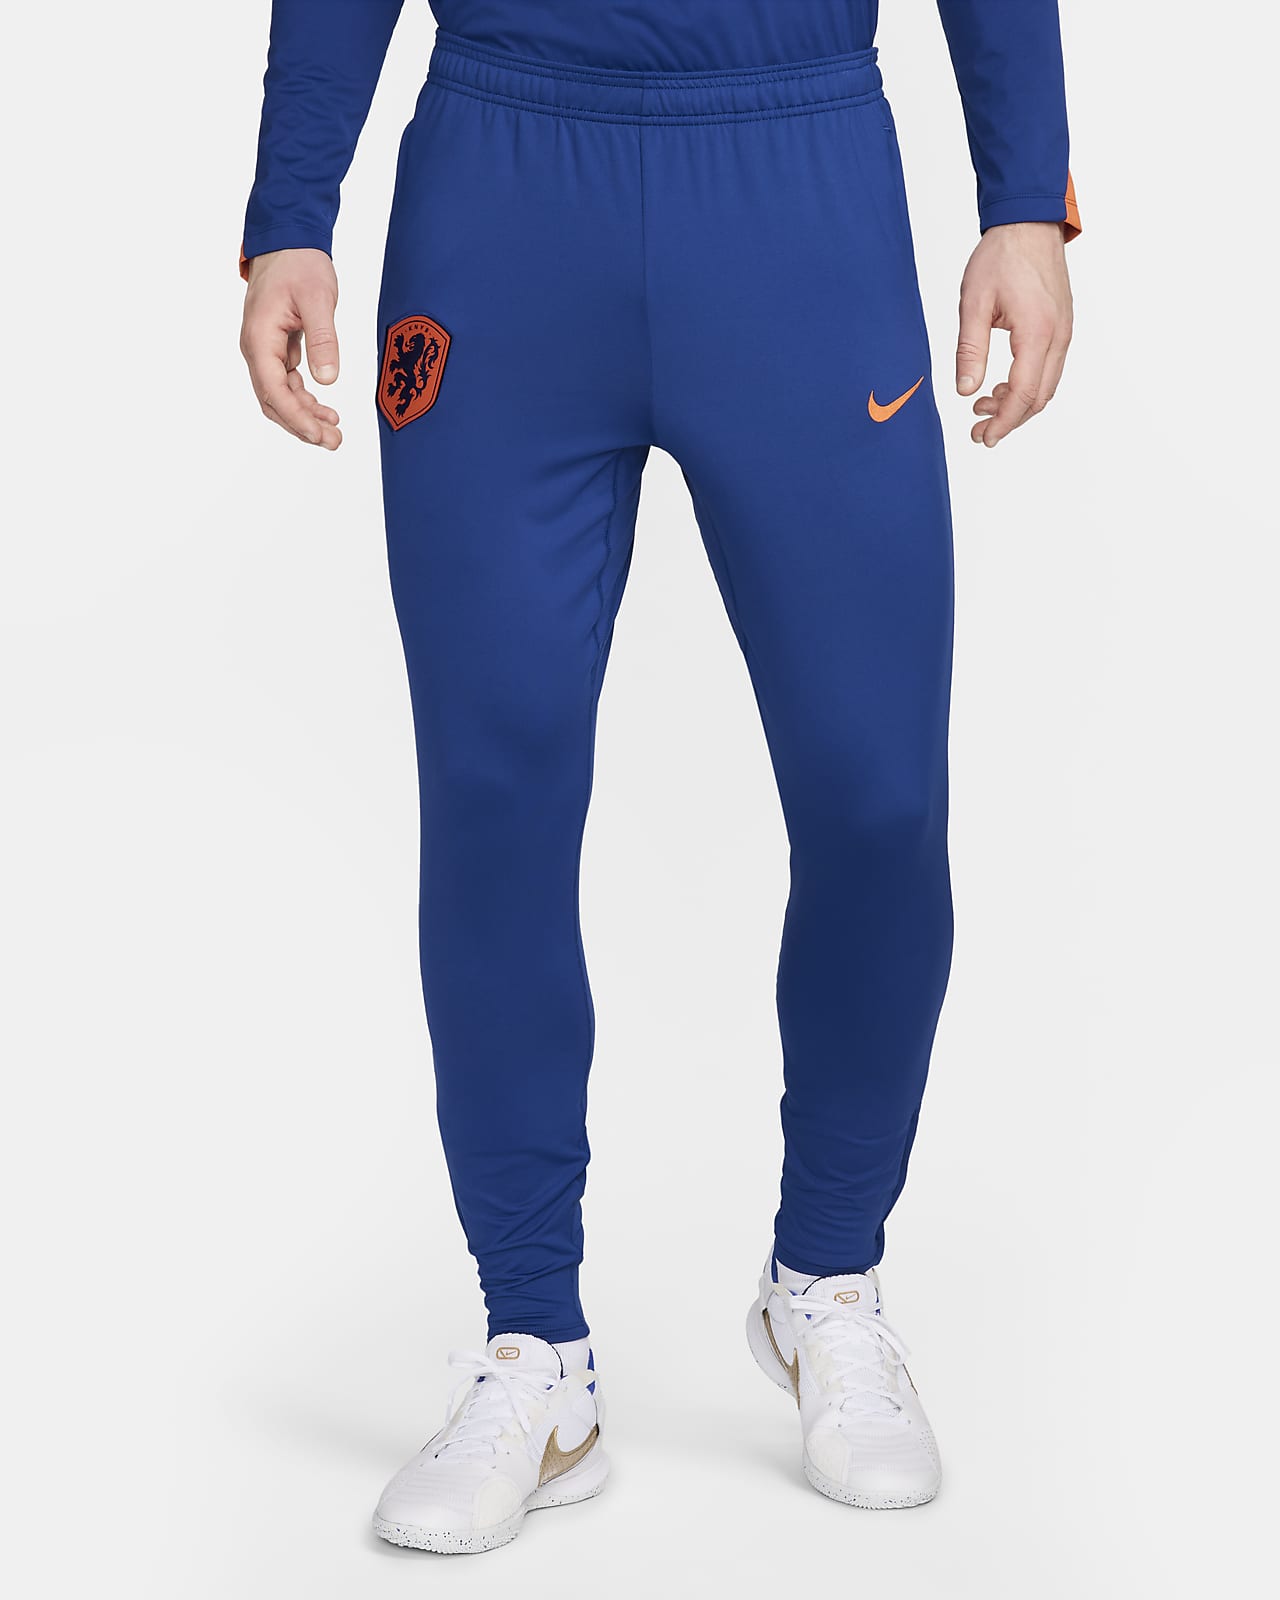 Ανδρικό ποδοσφαιρικό πλεκτό παντελόνι Κάτω Χώρες Nike Dri-FIT Strike